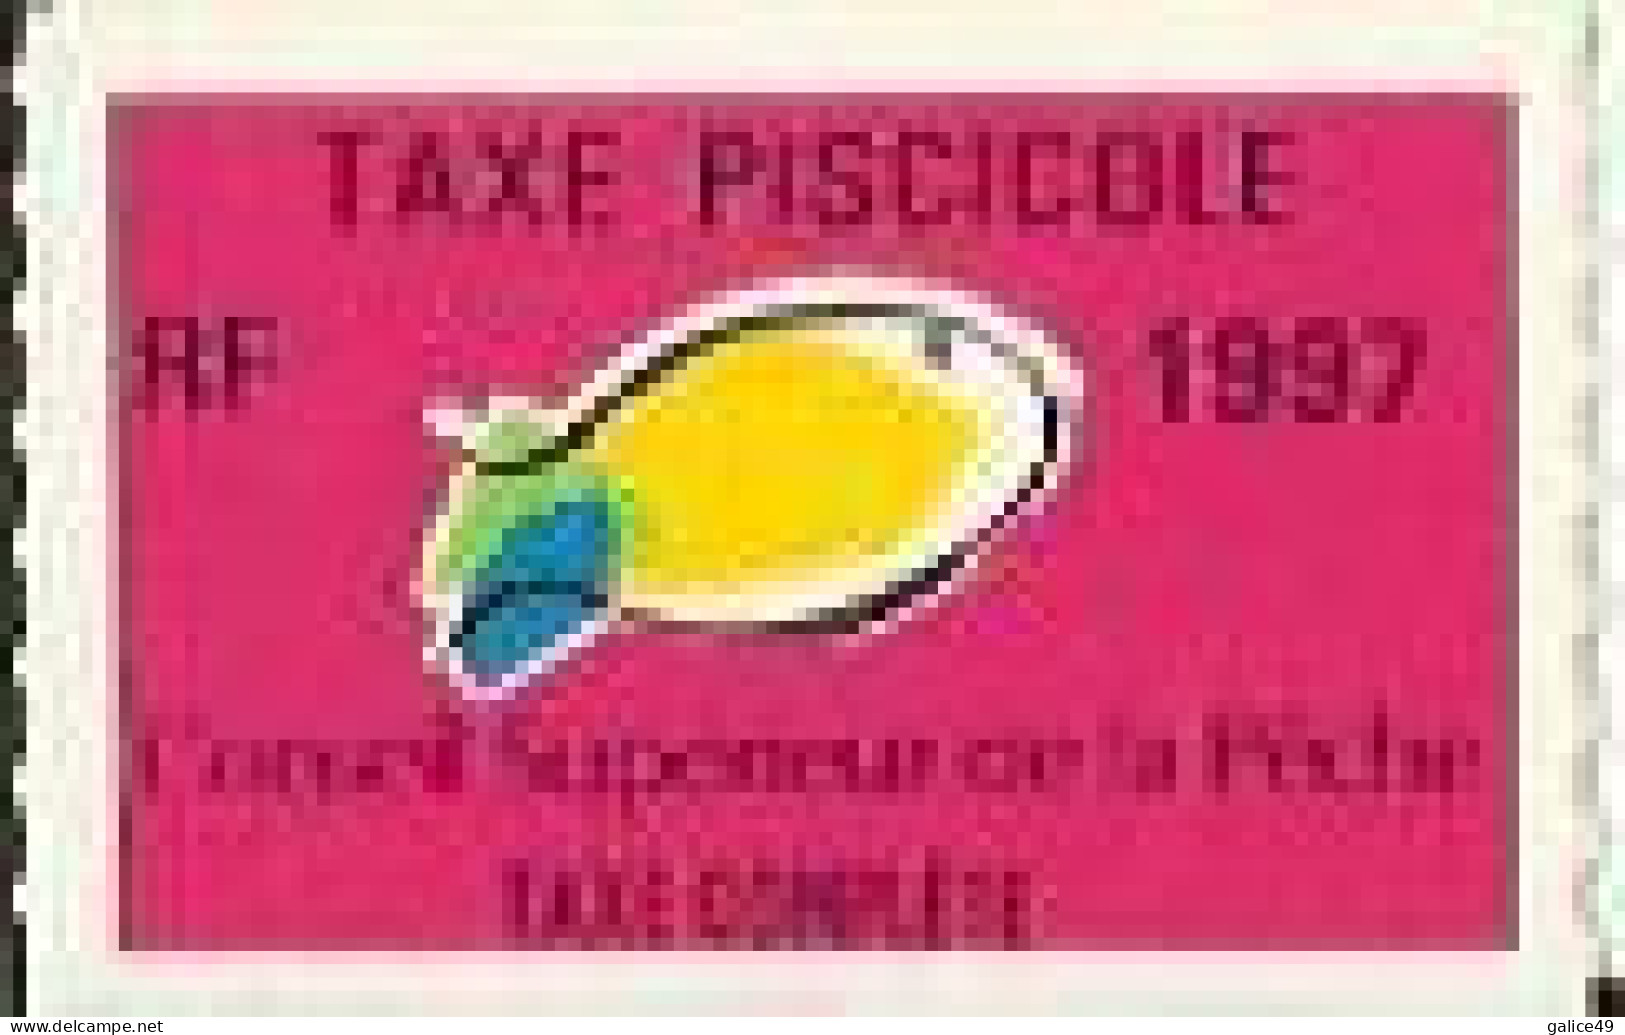 Taxe Piscicole Complète 1997 - Vierge - Autres & Non Classés